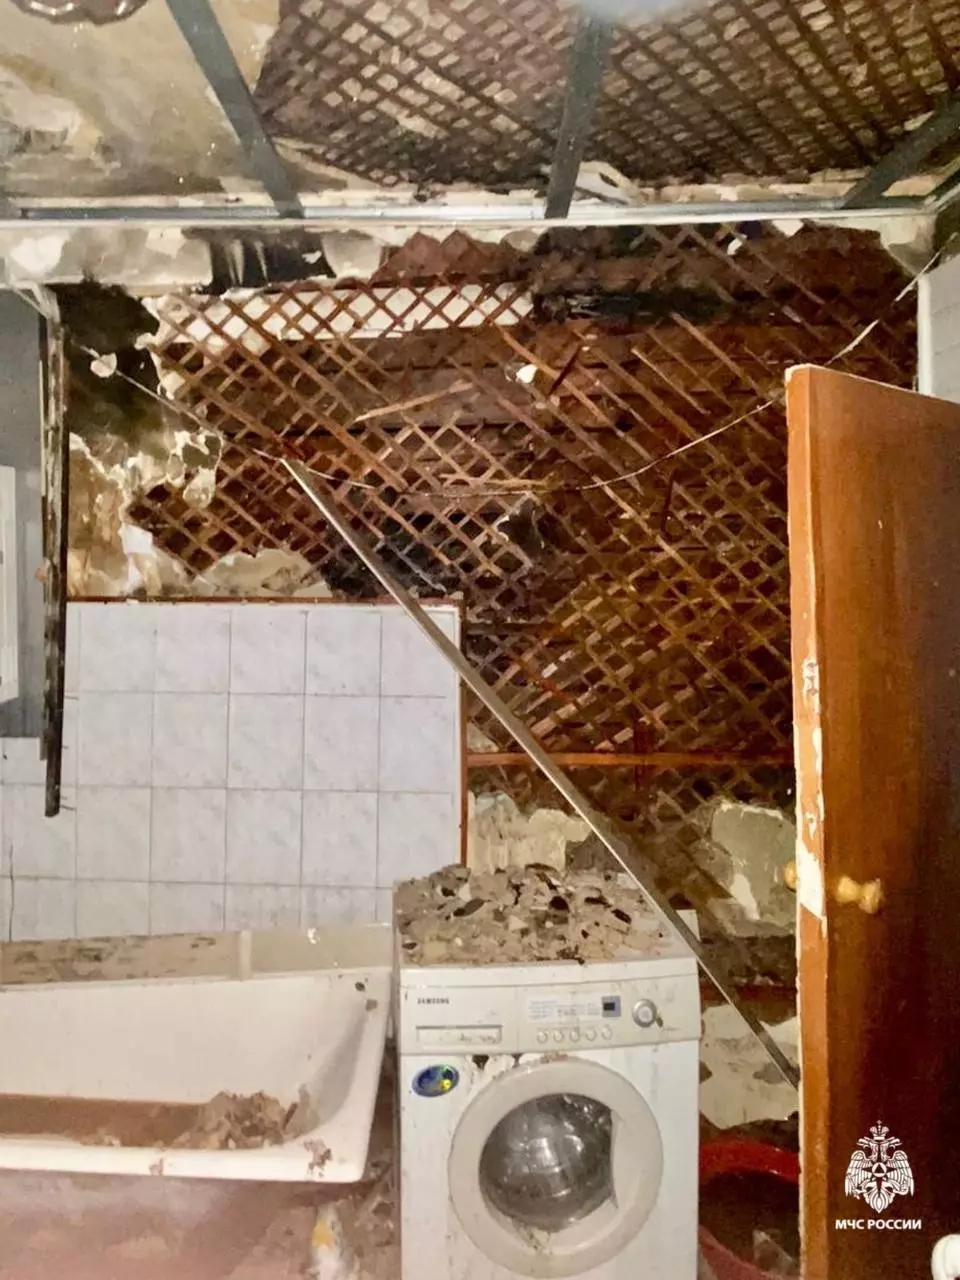 Пьяный мужчина устроил пожар и едва не сгорел в своей квартире в Ставрополе5